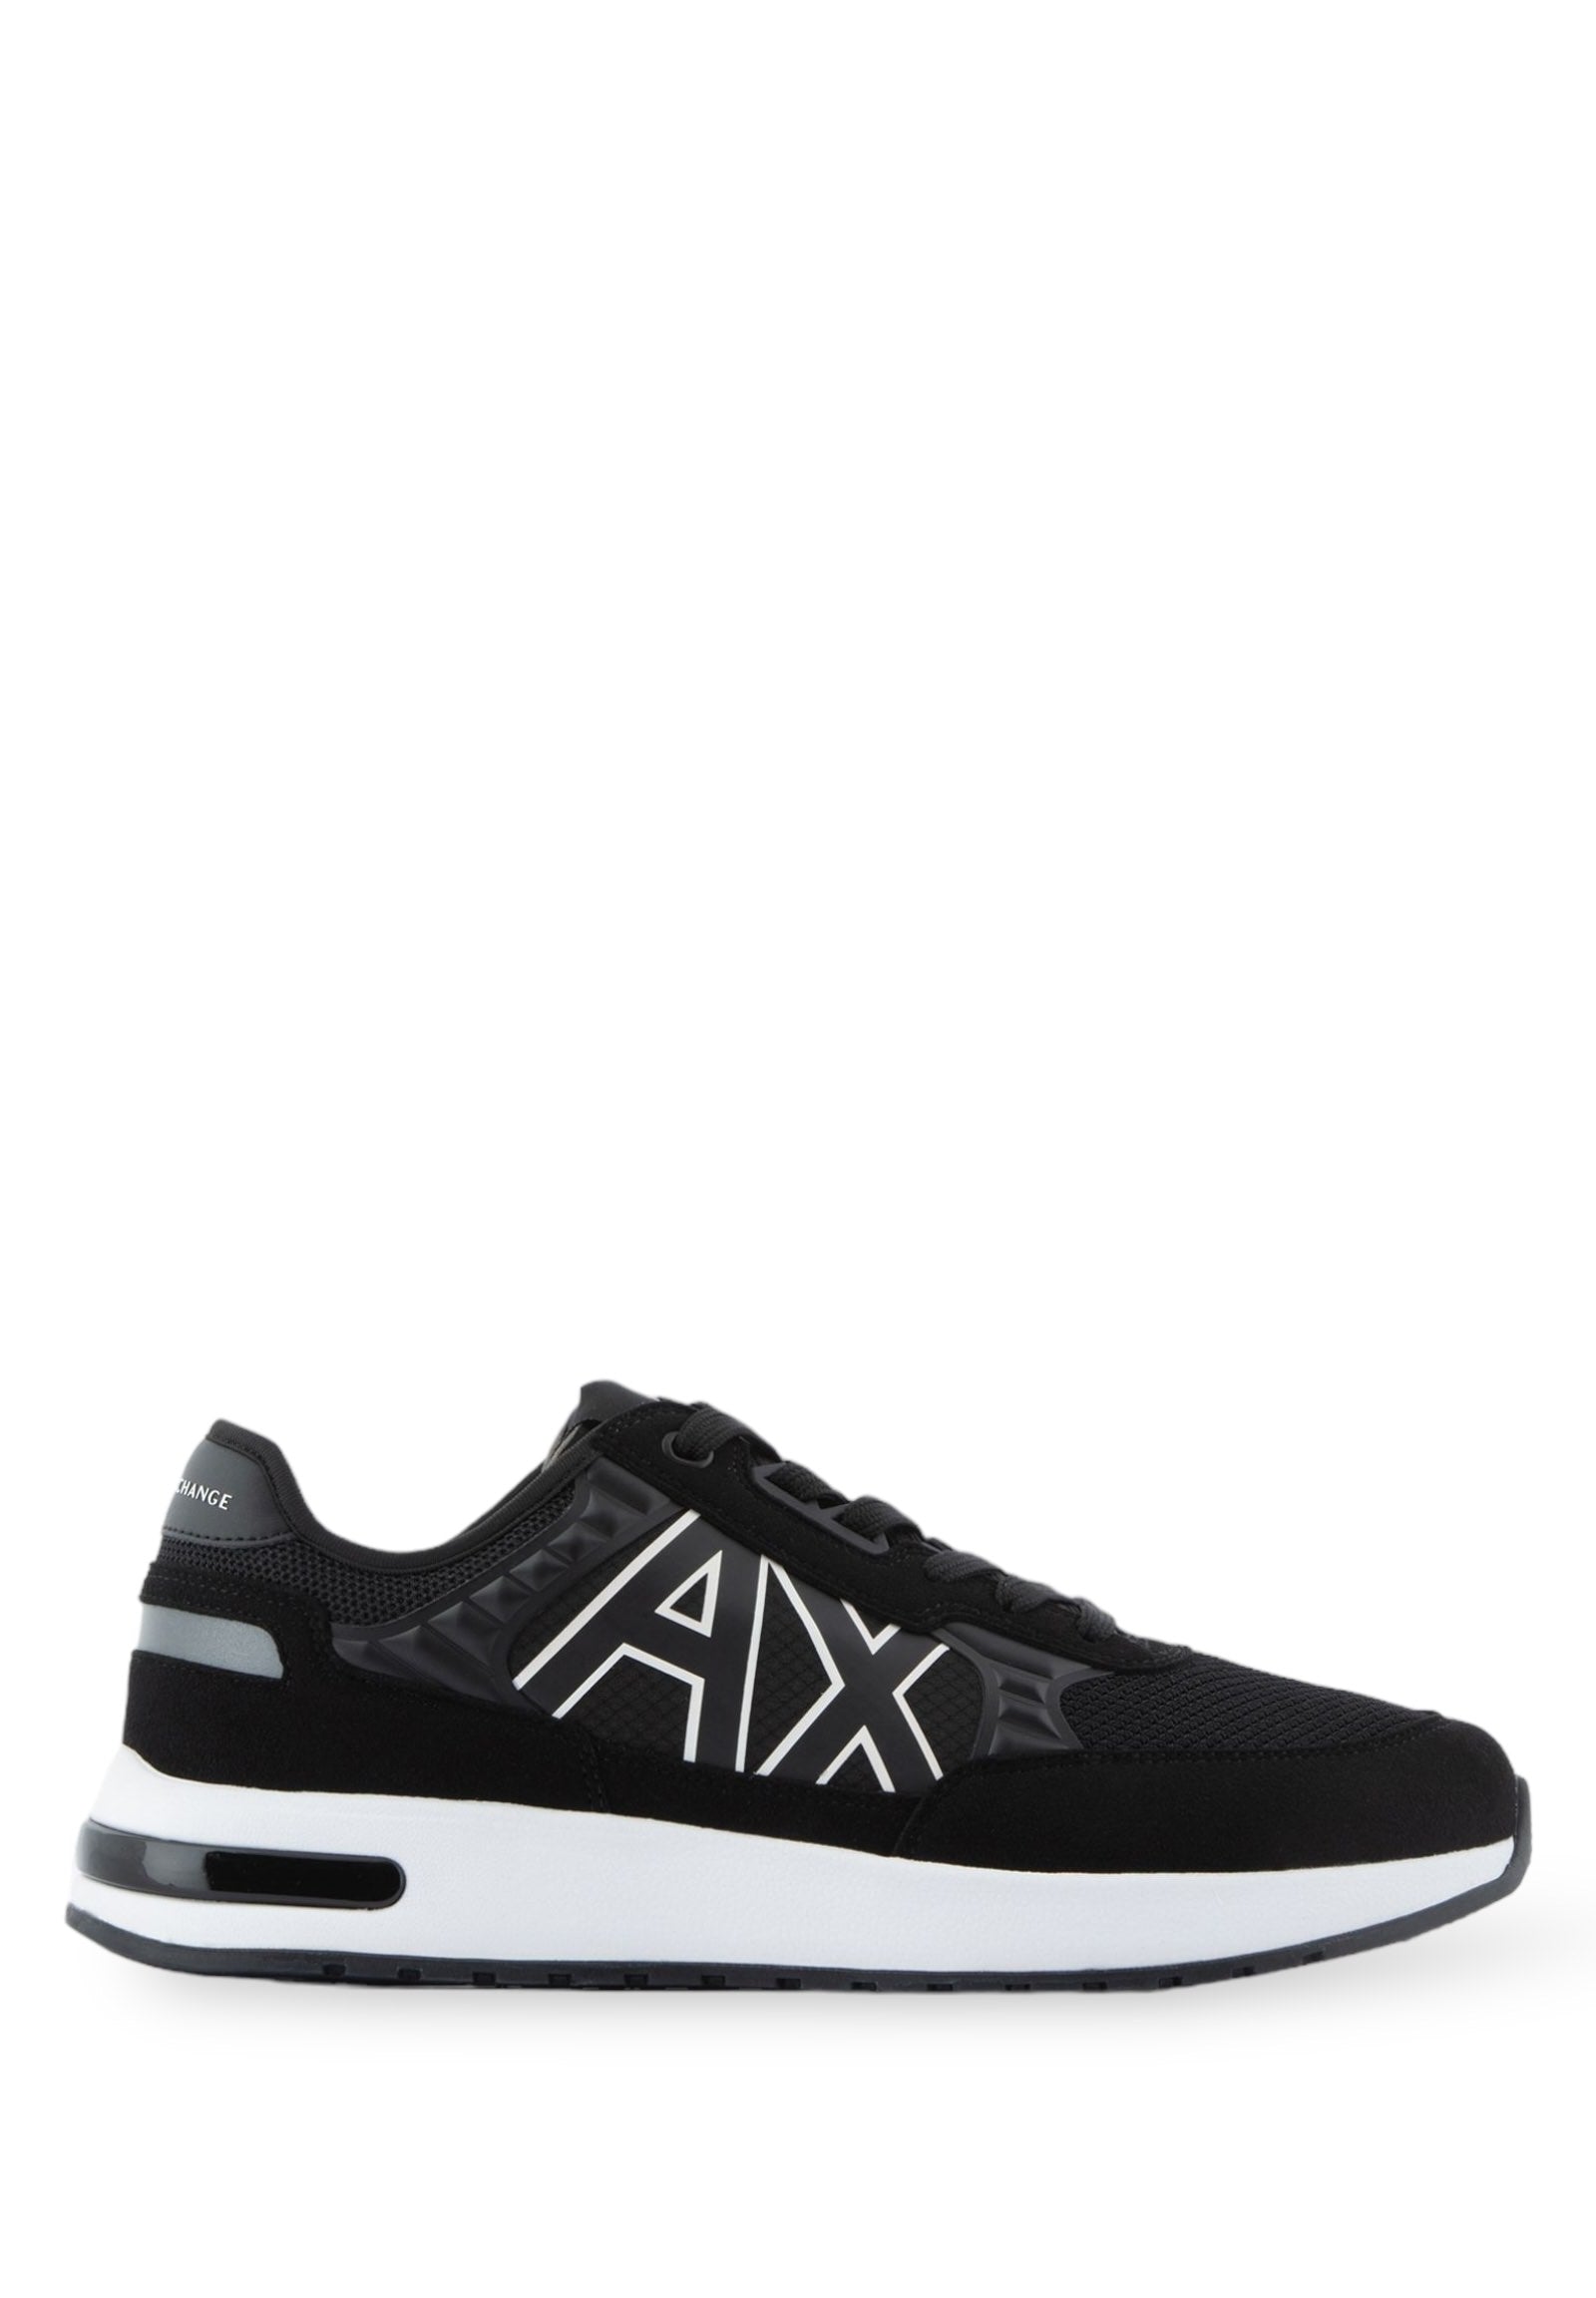 Xux090 Black Sneakers